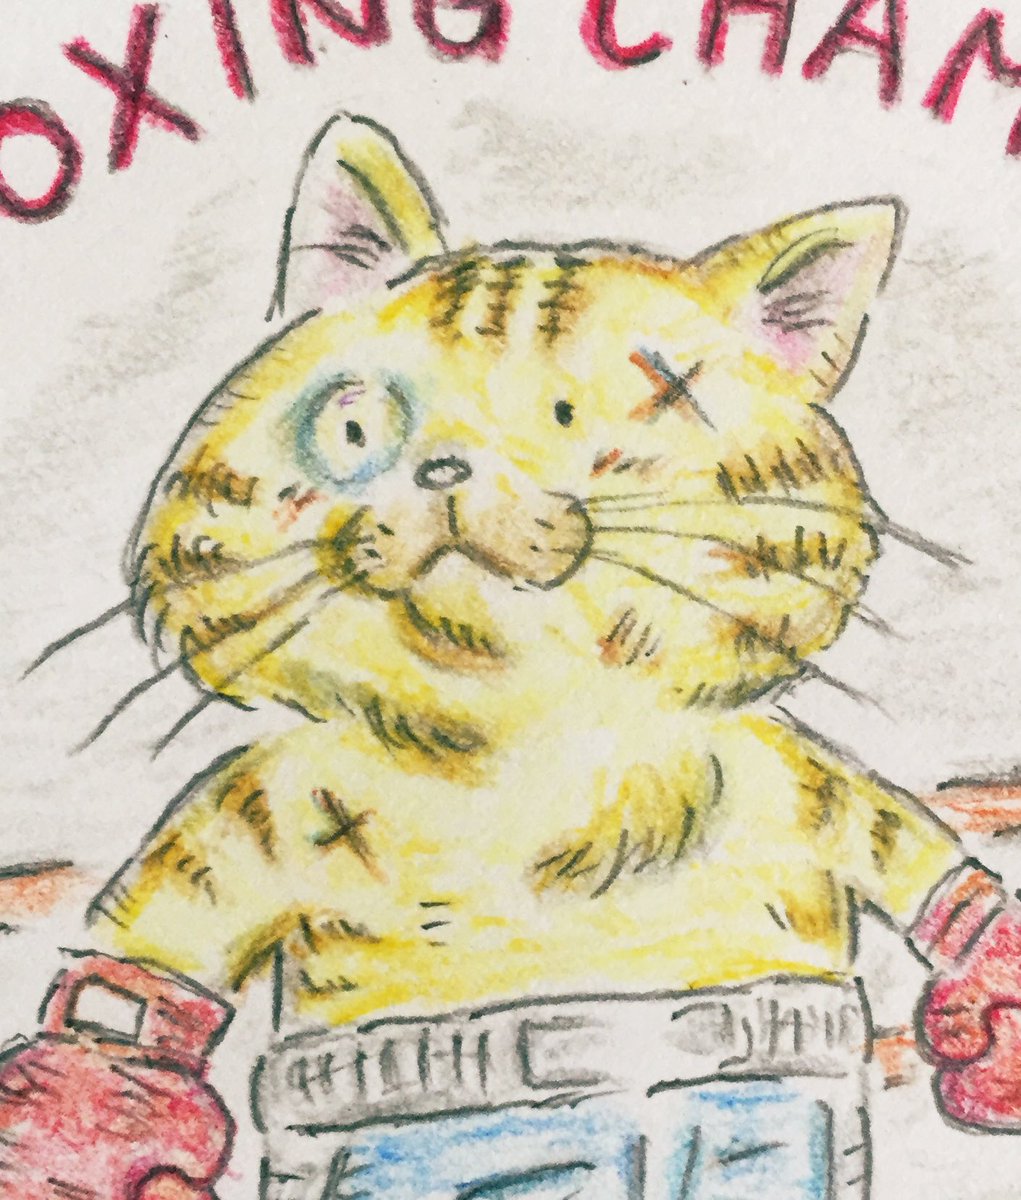 猫界のロッキー?茶トラ君
#猫 #猫イラスト #イラスト
#ロッキーバルボア #boxing #イラスト好きさんと繋がりたい #猫好きさんと繋がりたい #Rocky #猫のいる幸せ 